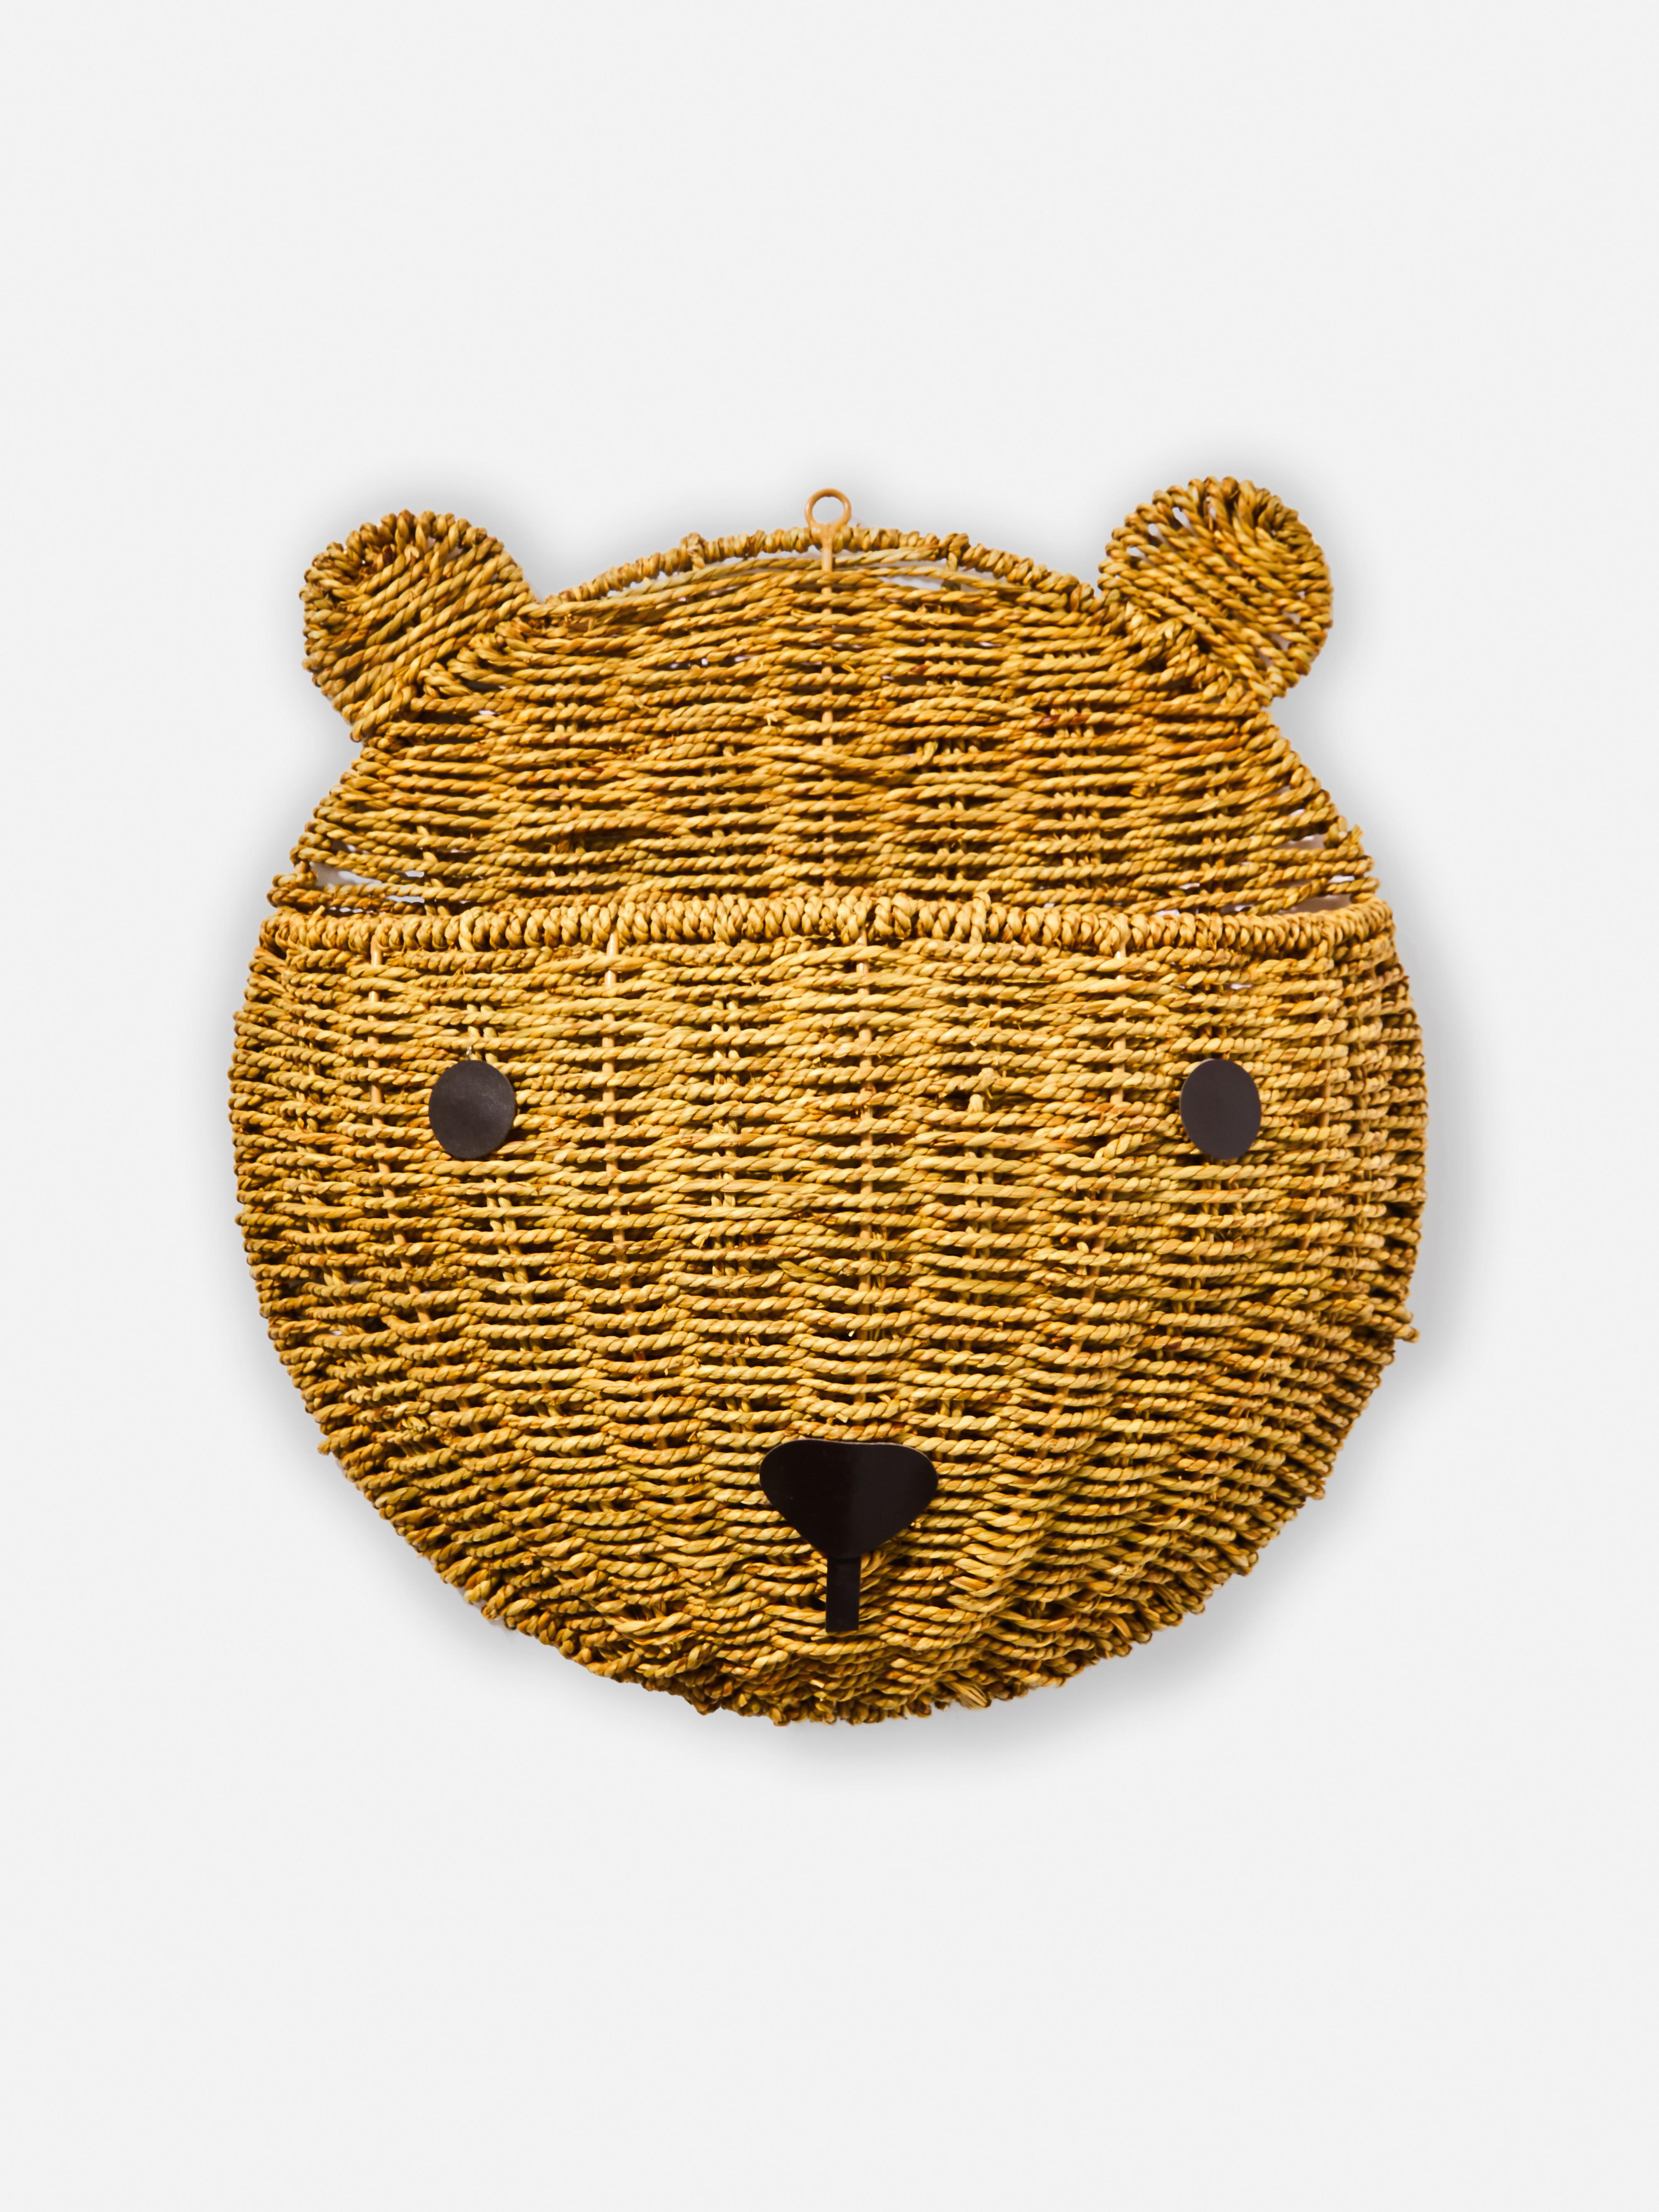 Hanging Bear Wall Wicker Basket